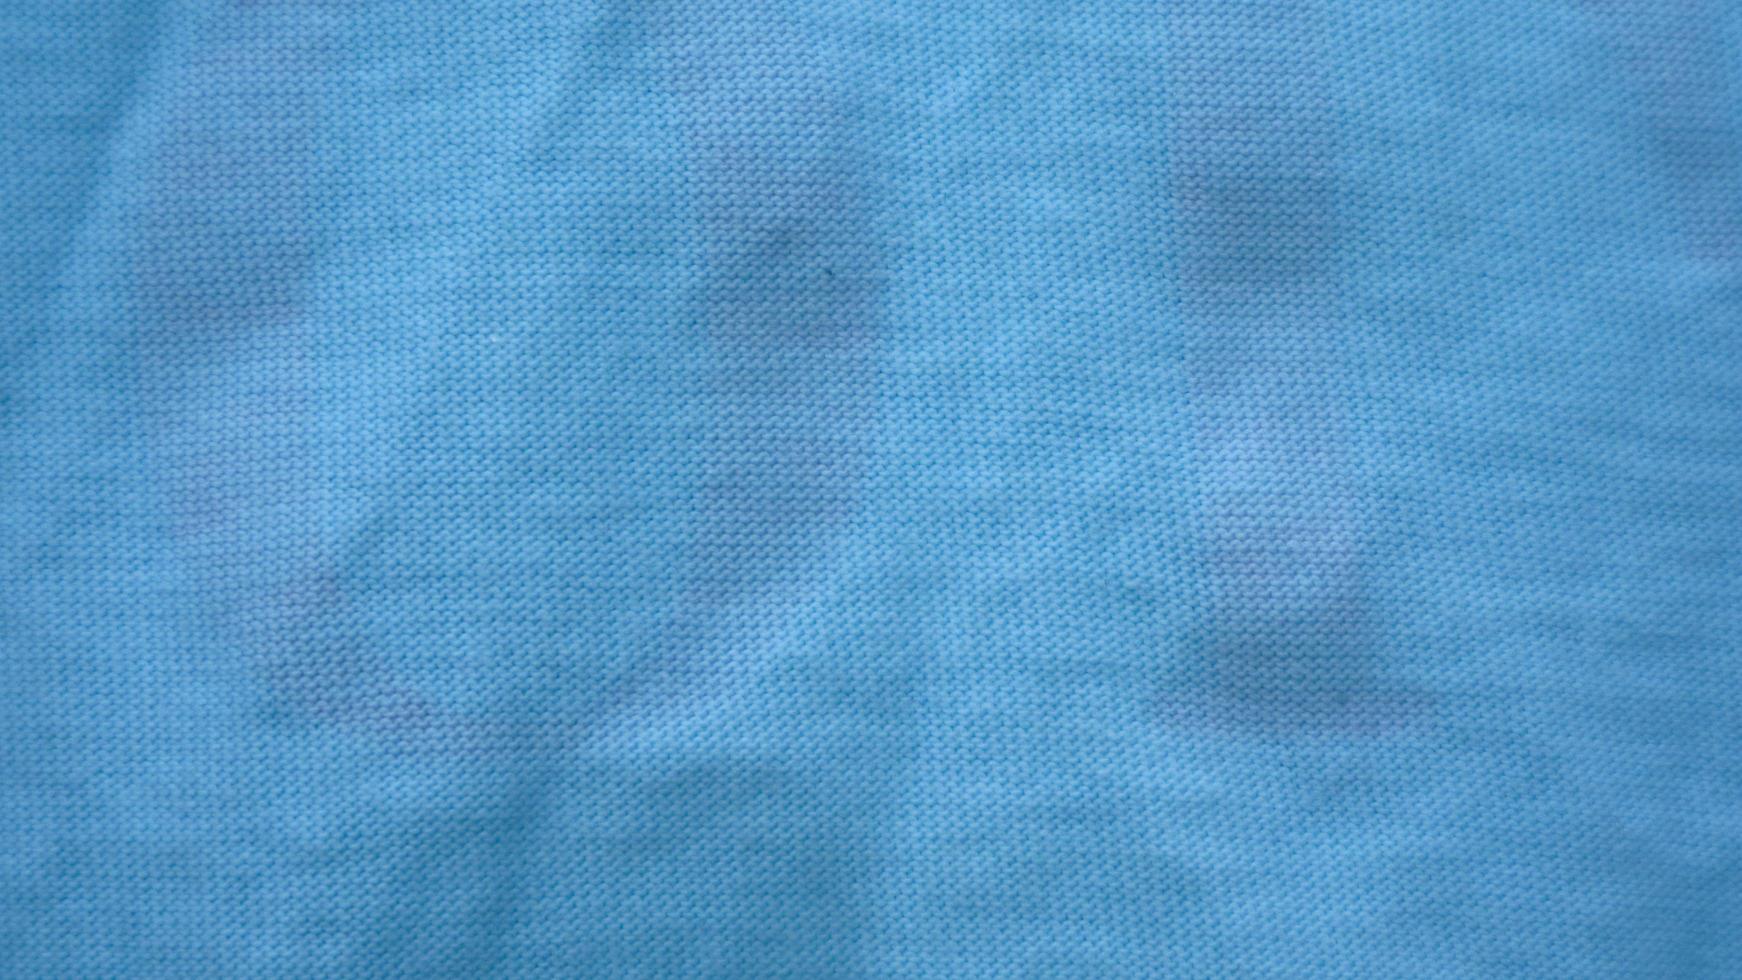 textura de pano azul claro como pano de fundo foto